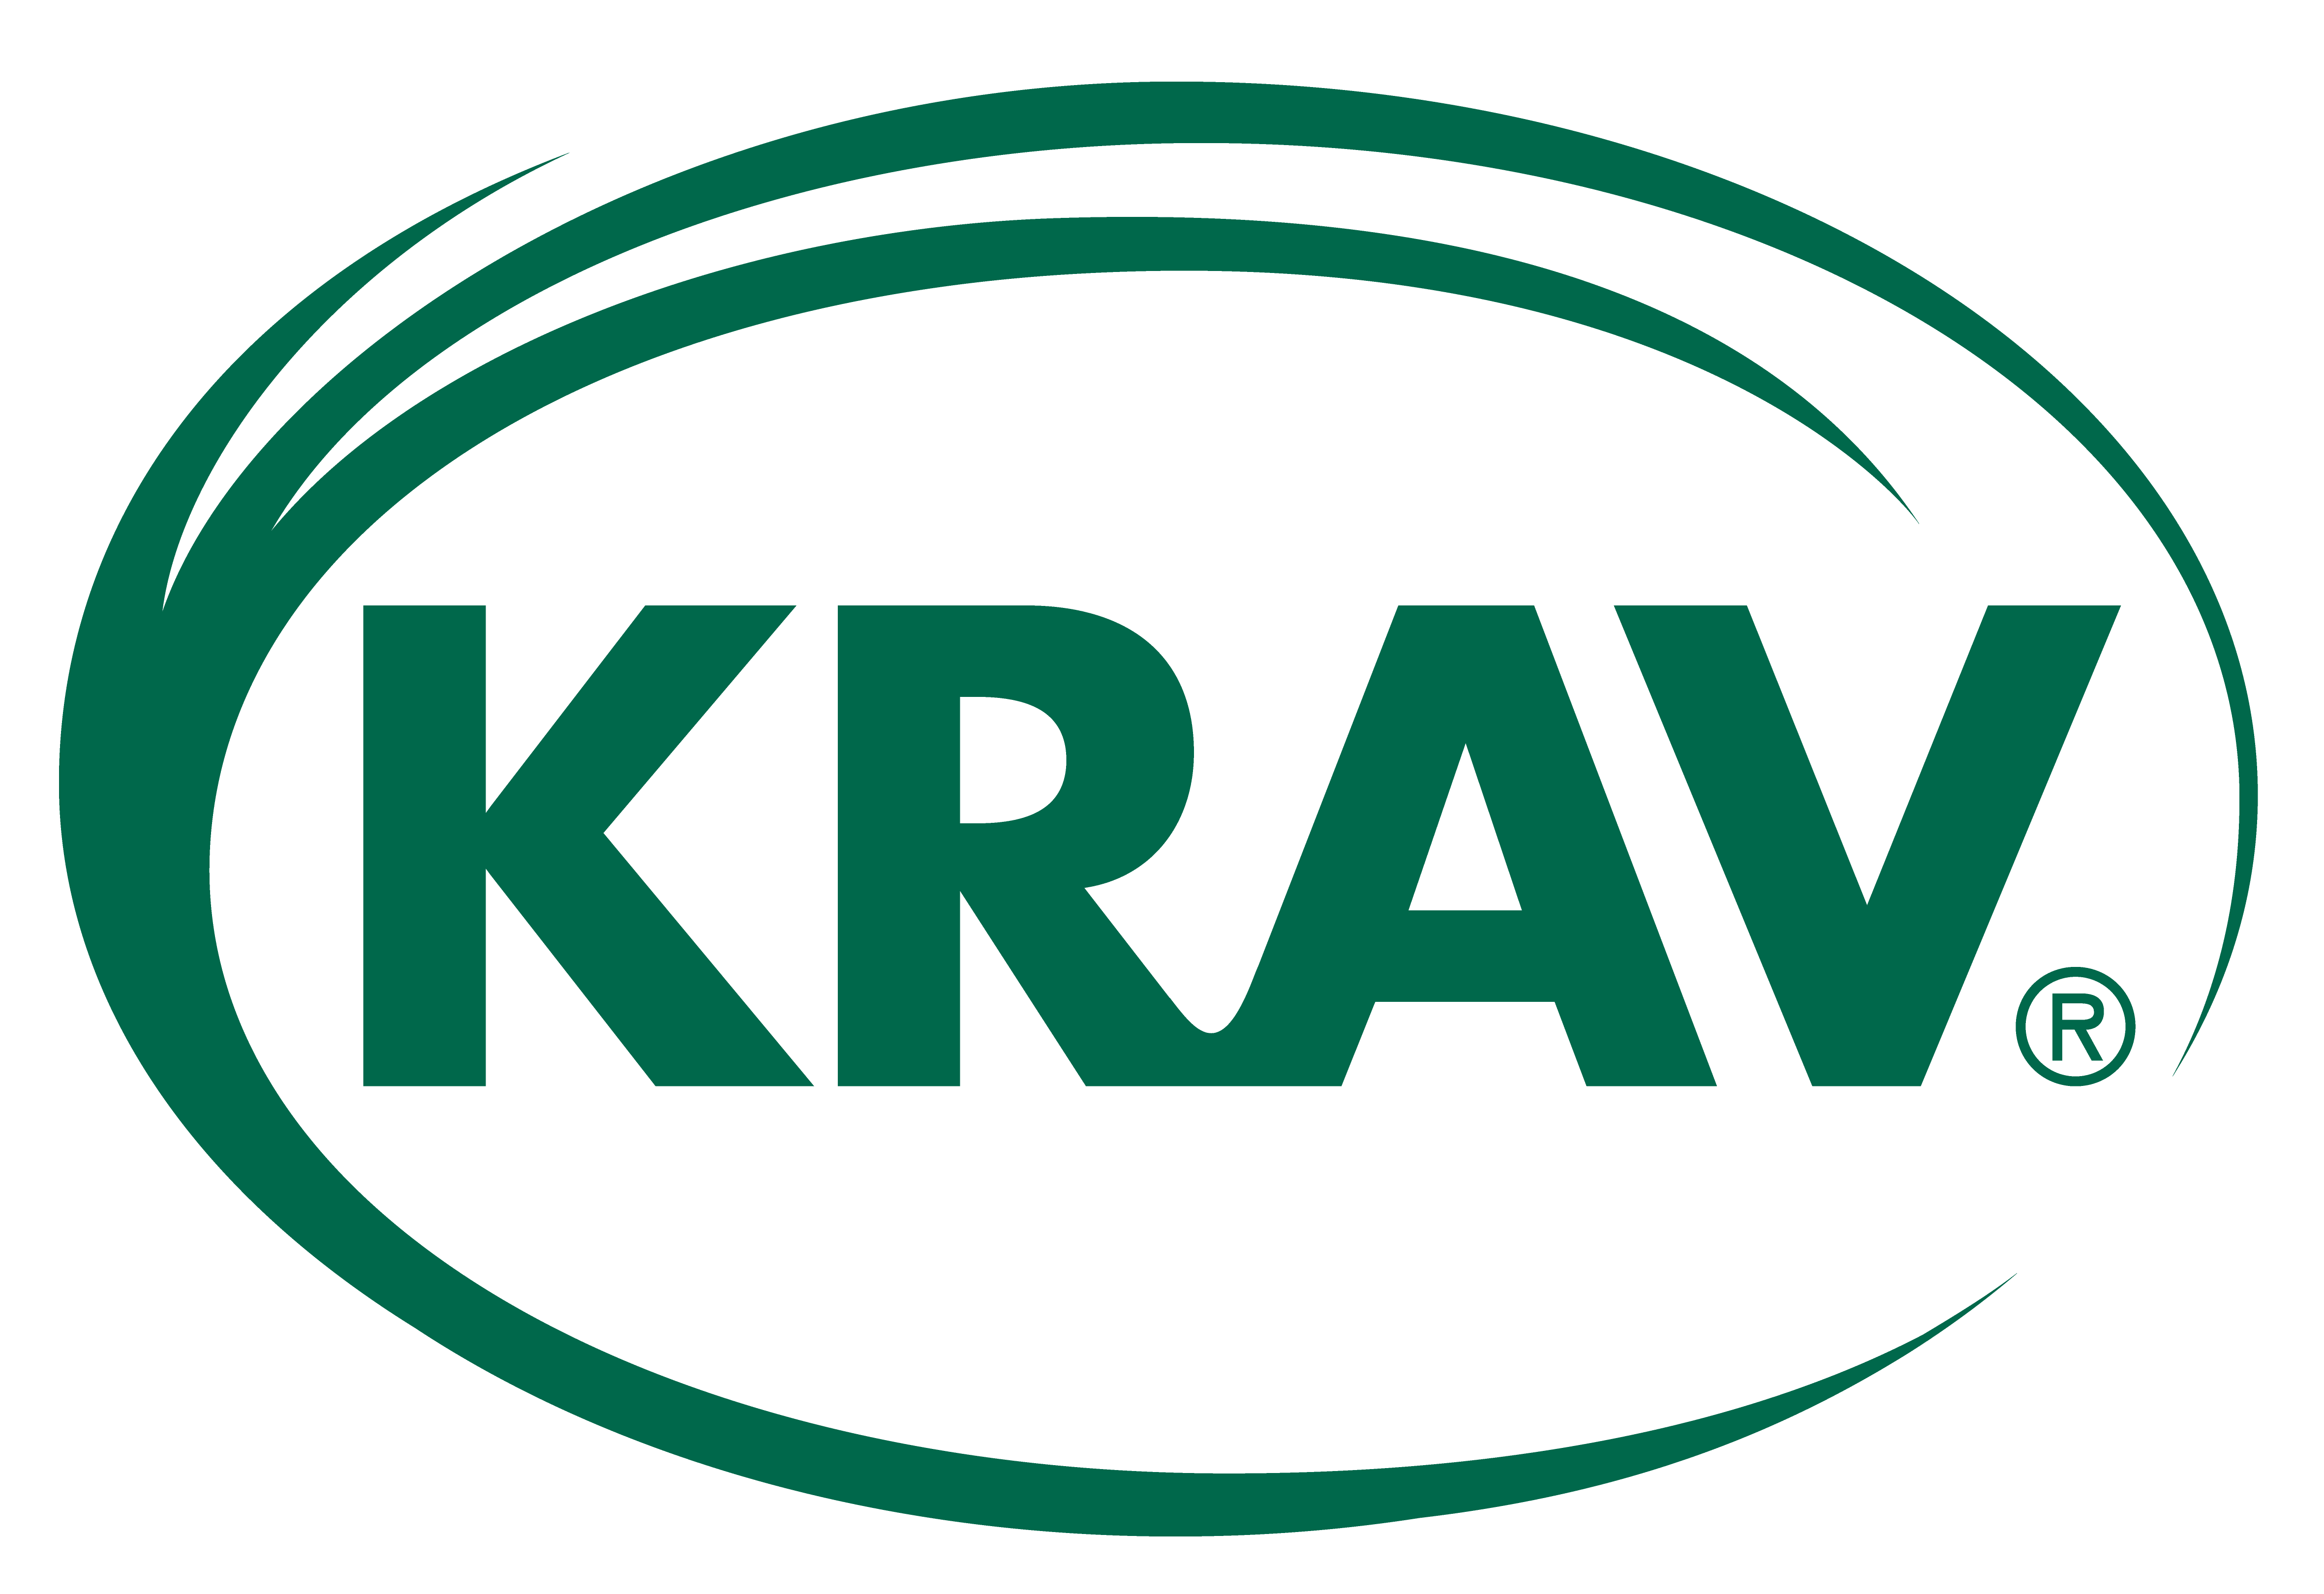 KRAV labeled